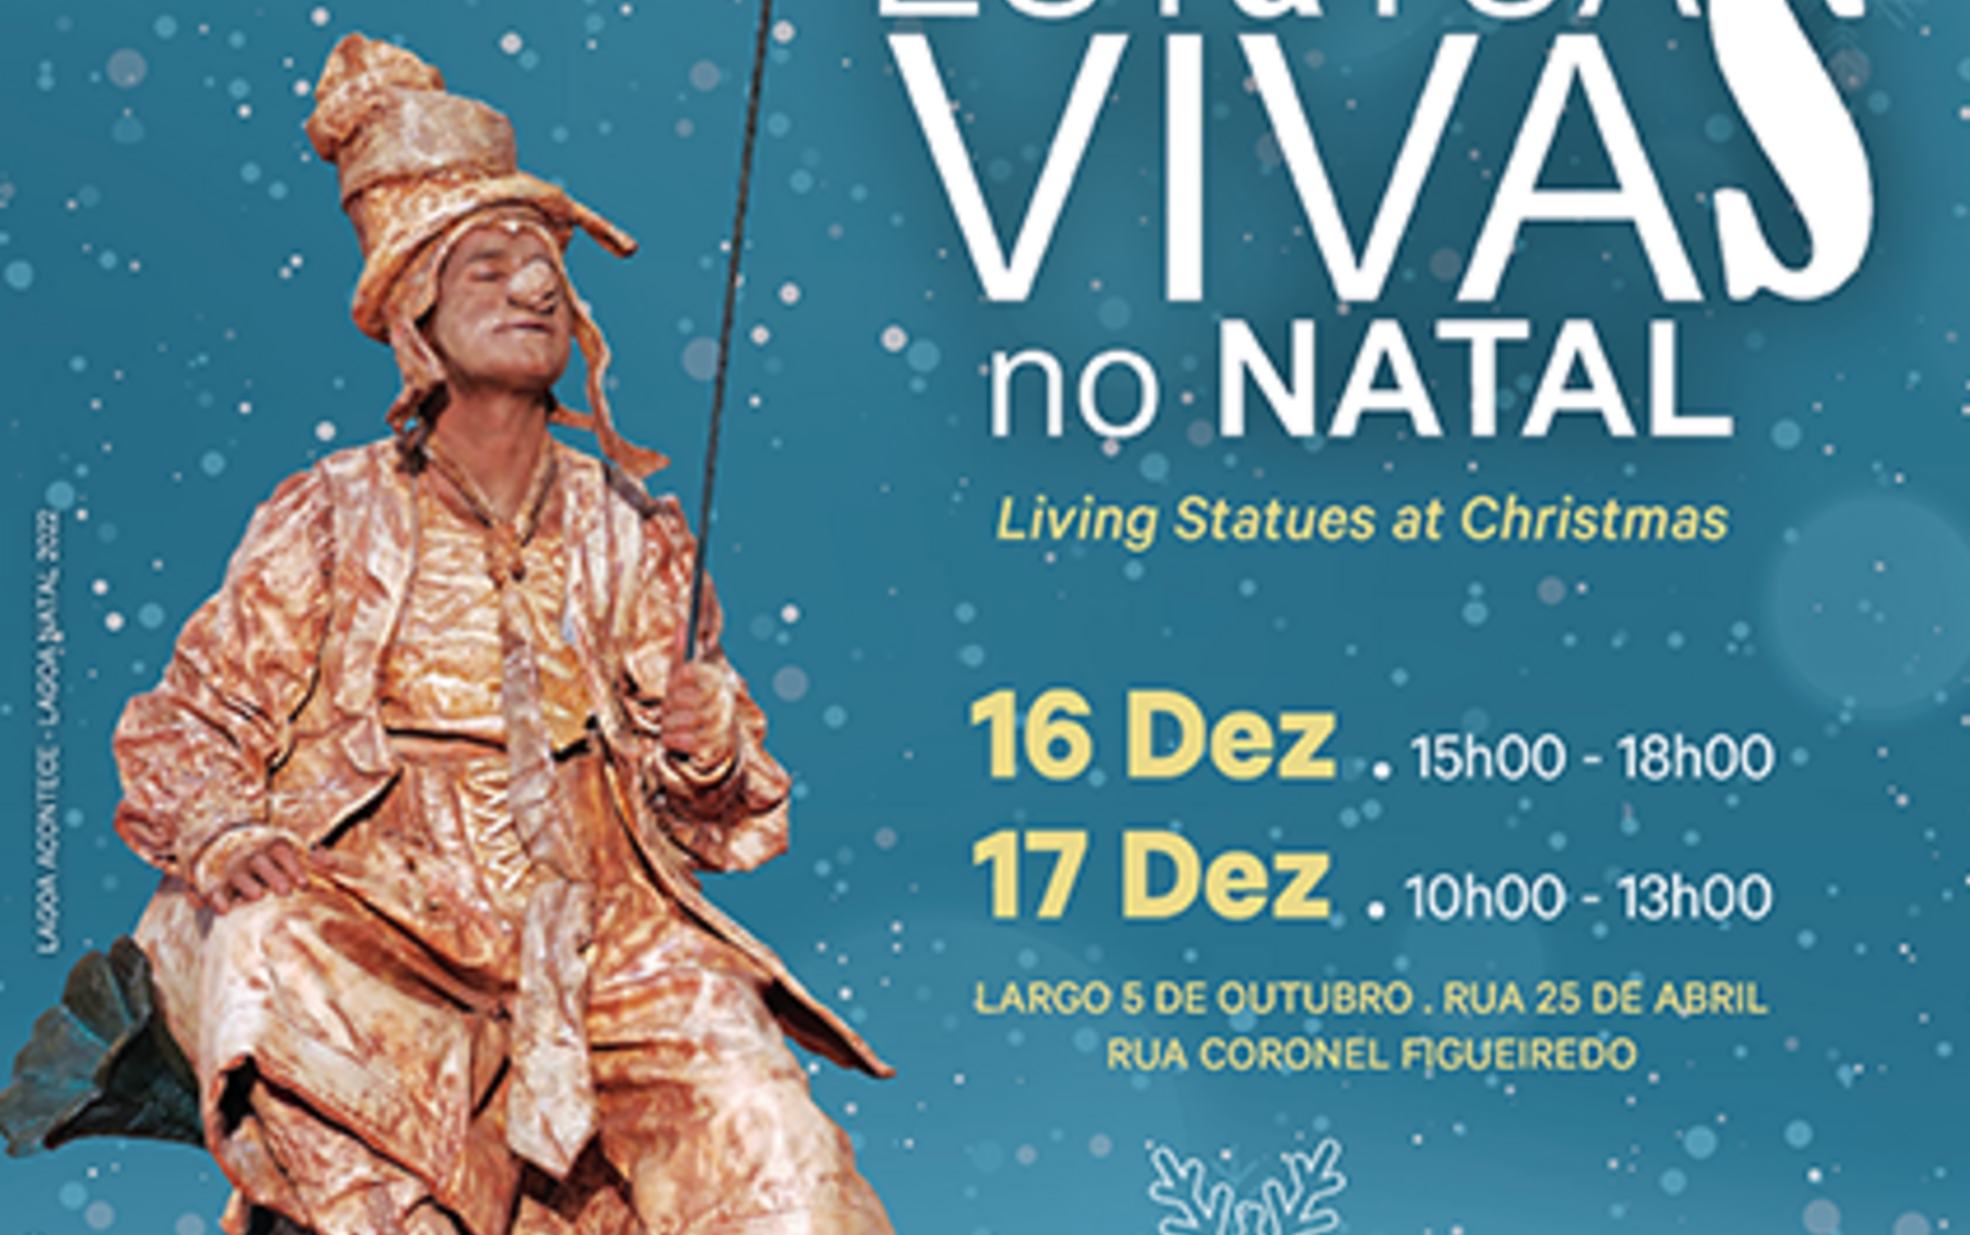 Lagoa recebe a 8ª edição das estátuas vivas em época natalícia